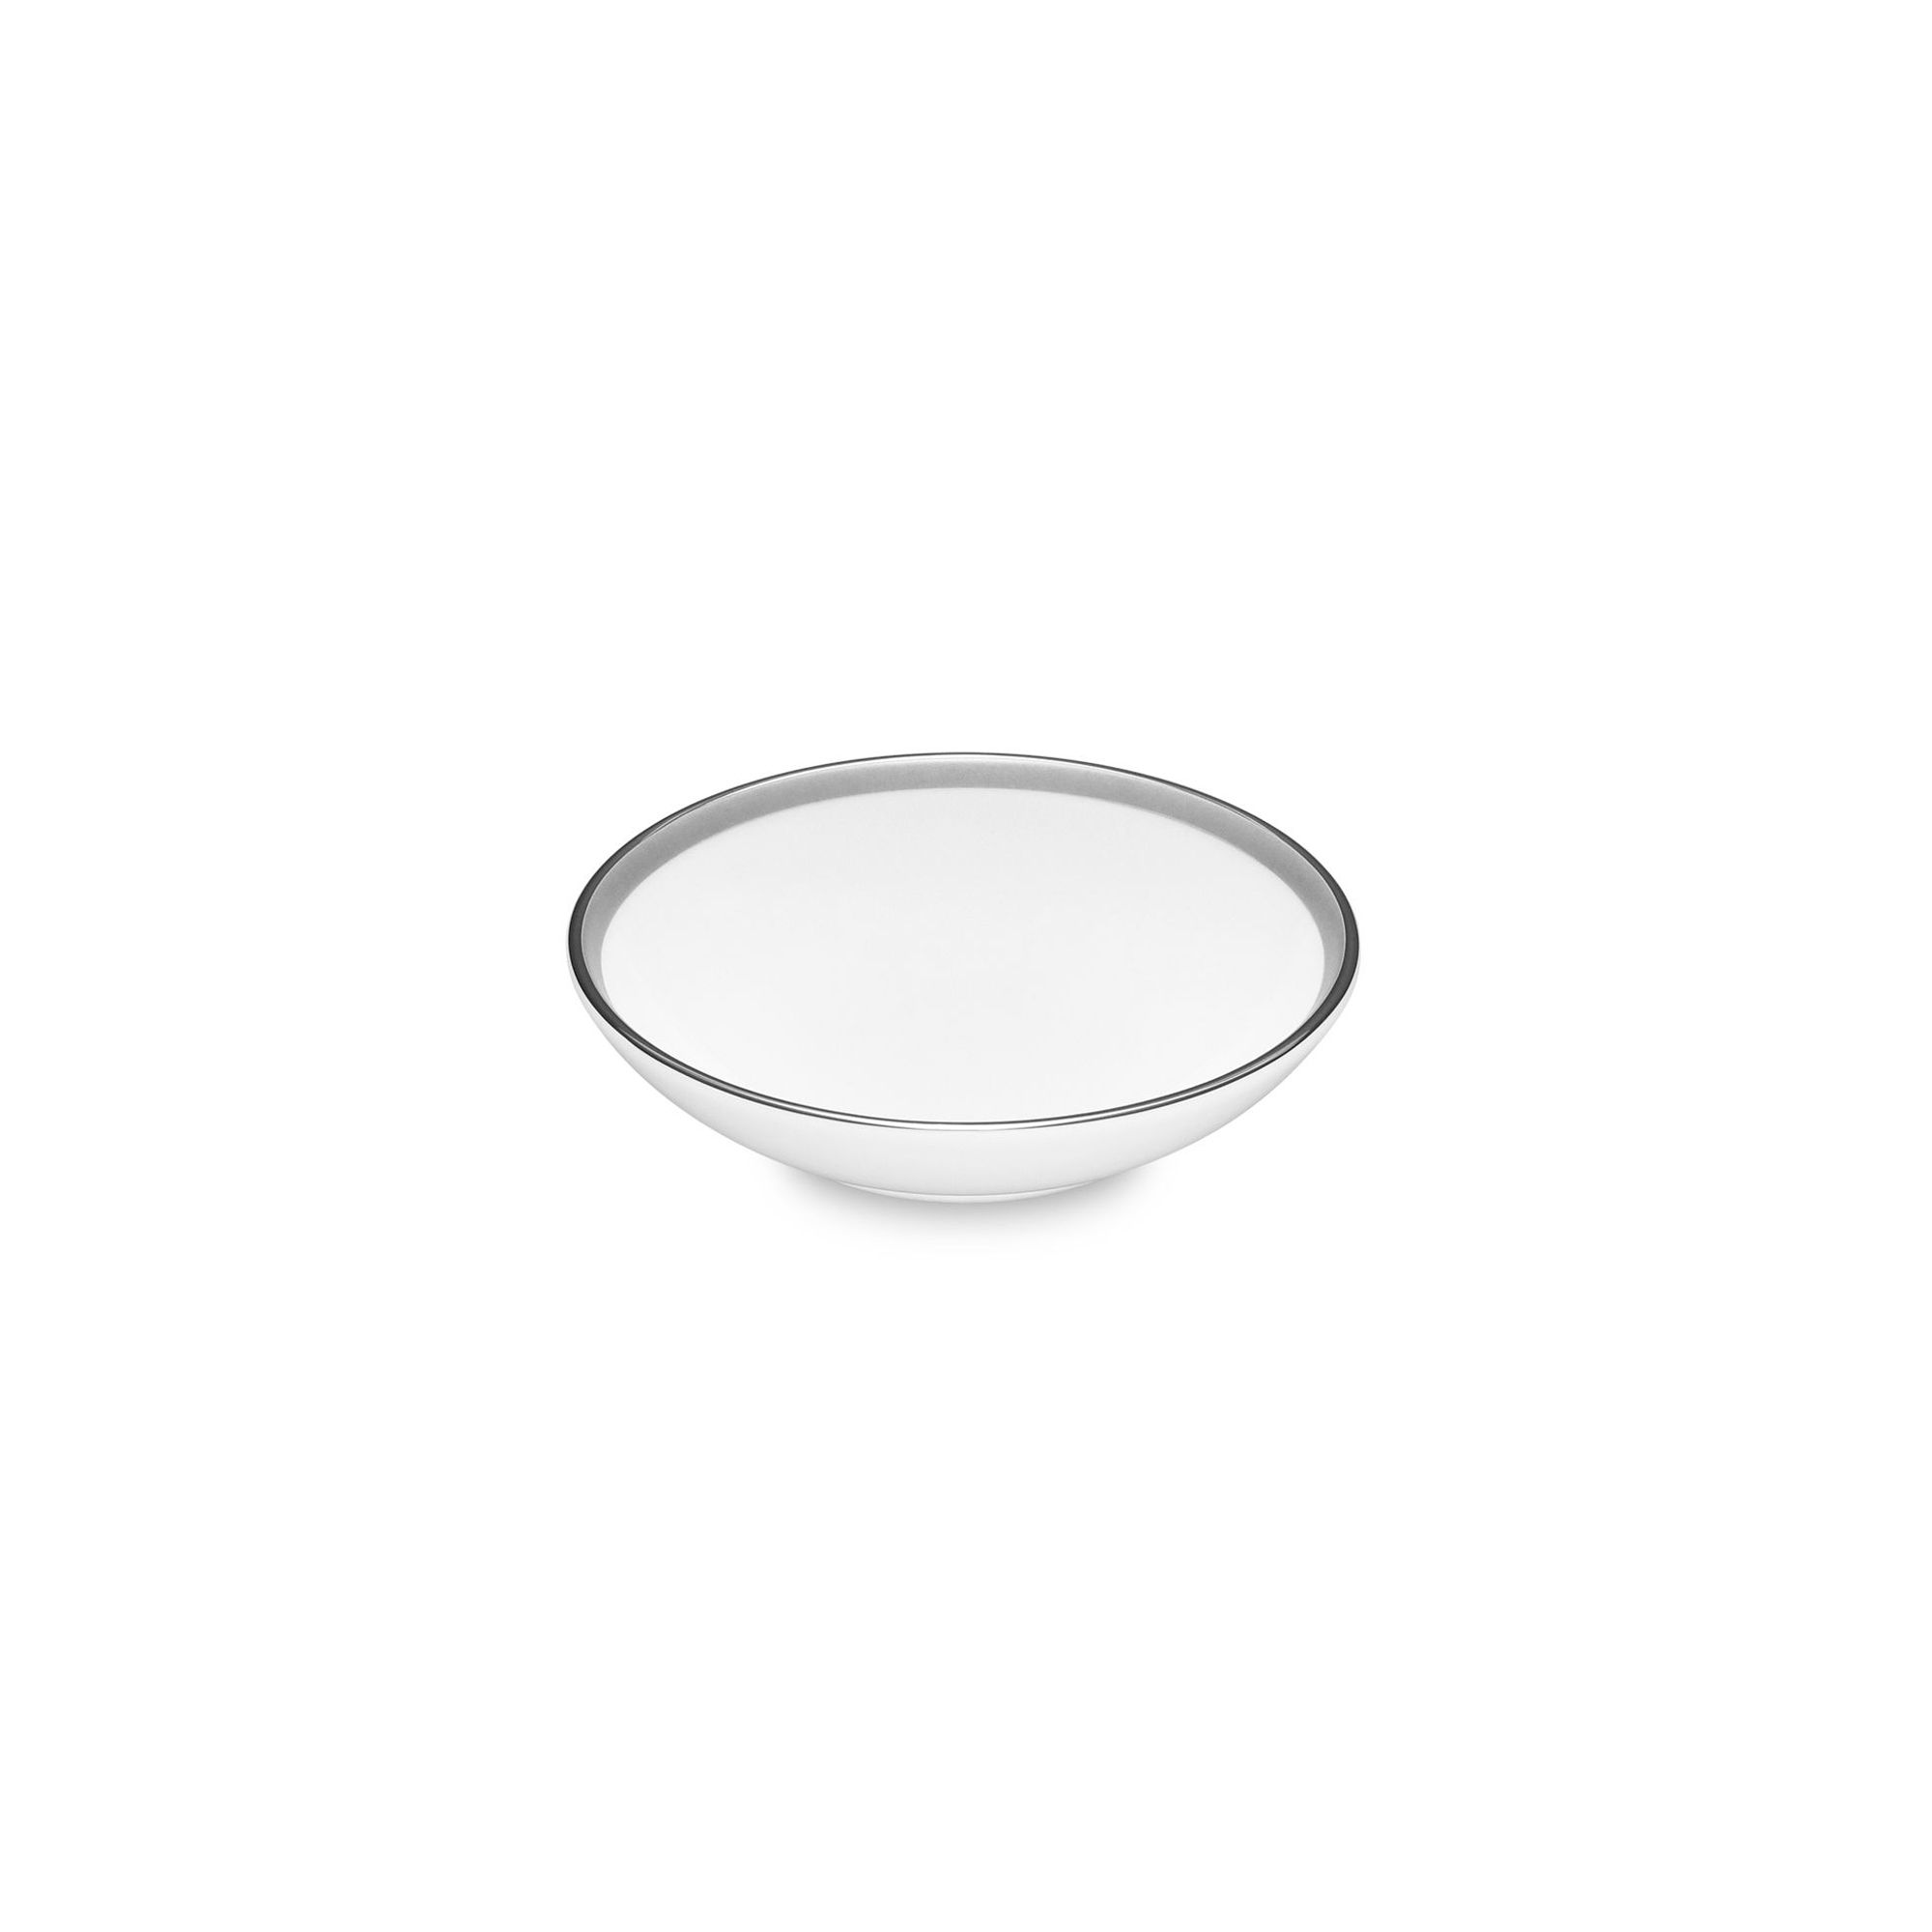  Đĩa đựng nước chấm đường kính 9,8cm sứ trắng | Eternal Palace 1717L-91419 